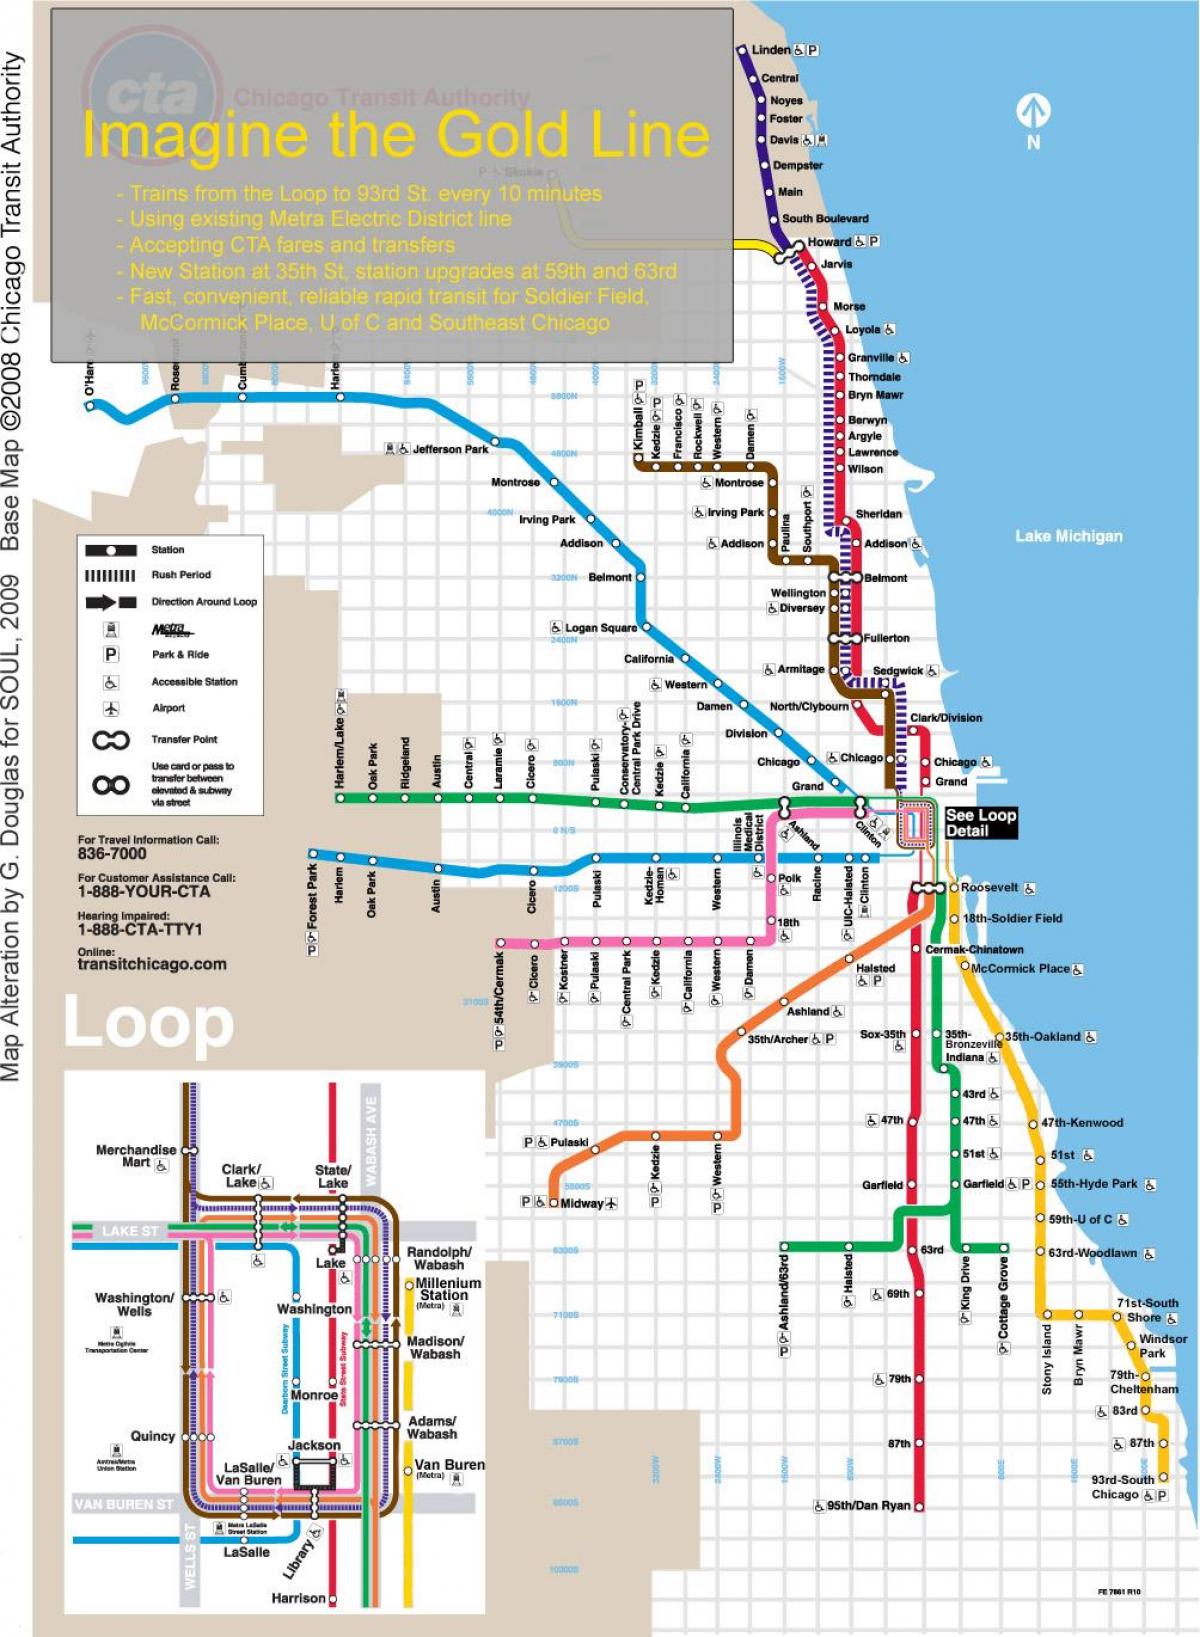 Чикаго поезде на карте синяя линия